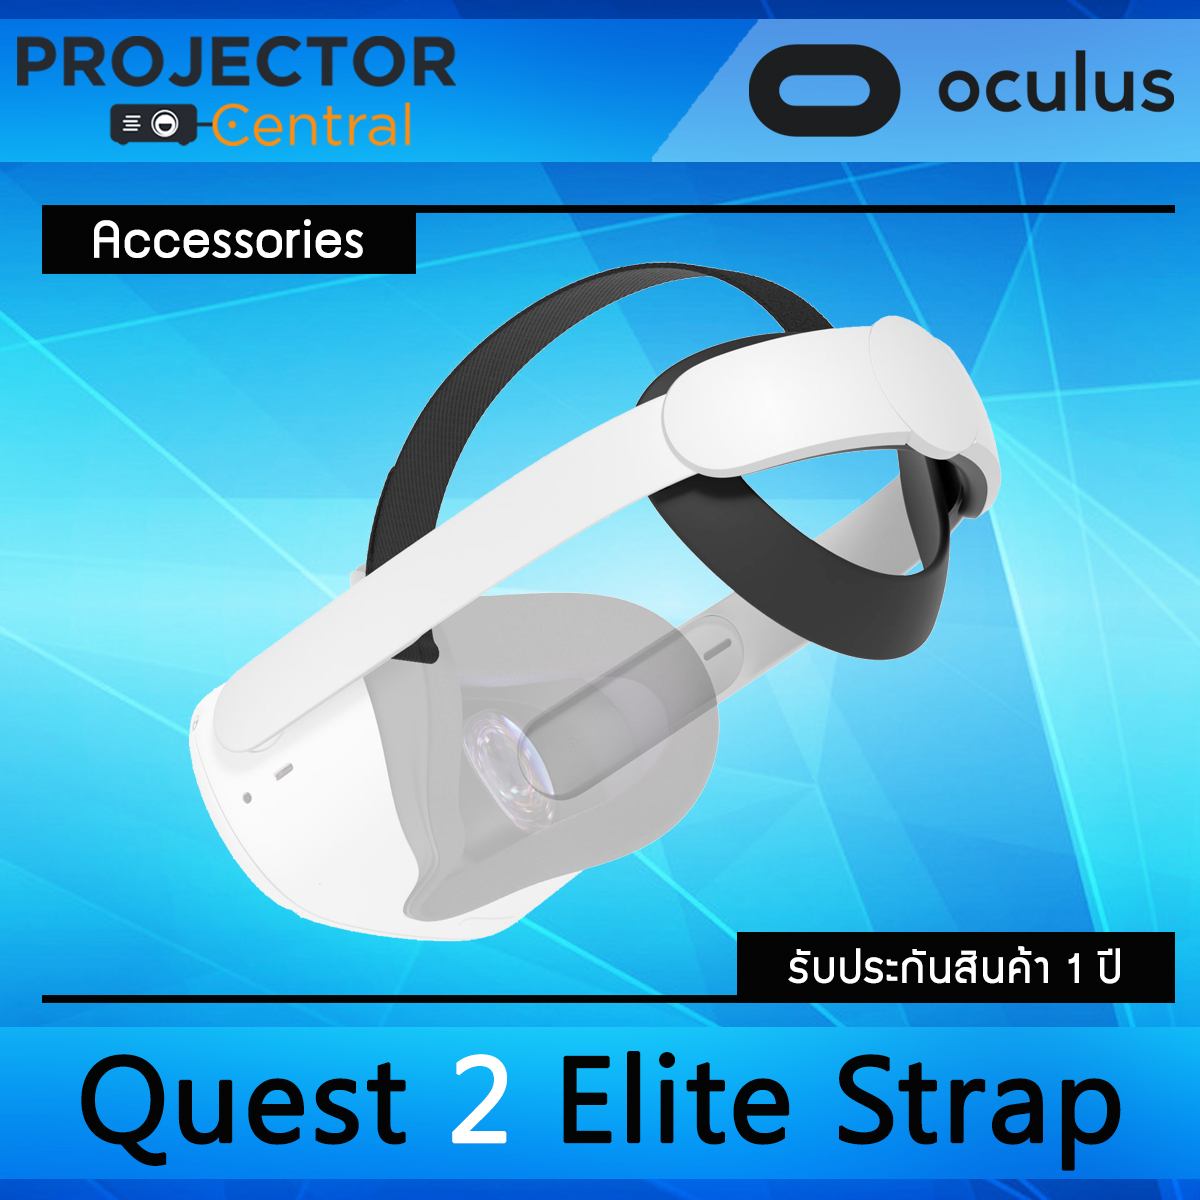 Oculus Quest 2 Elite Strap - Accessories